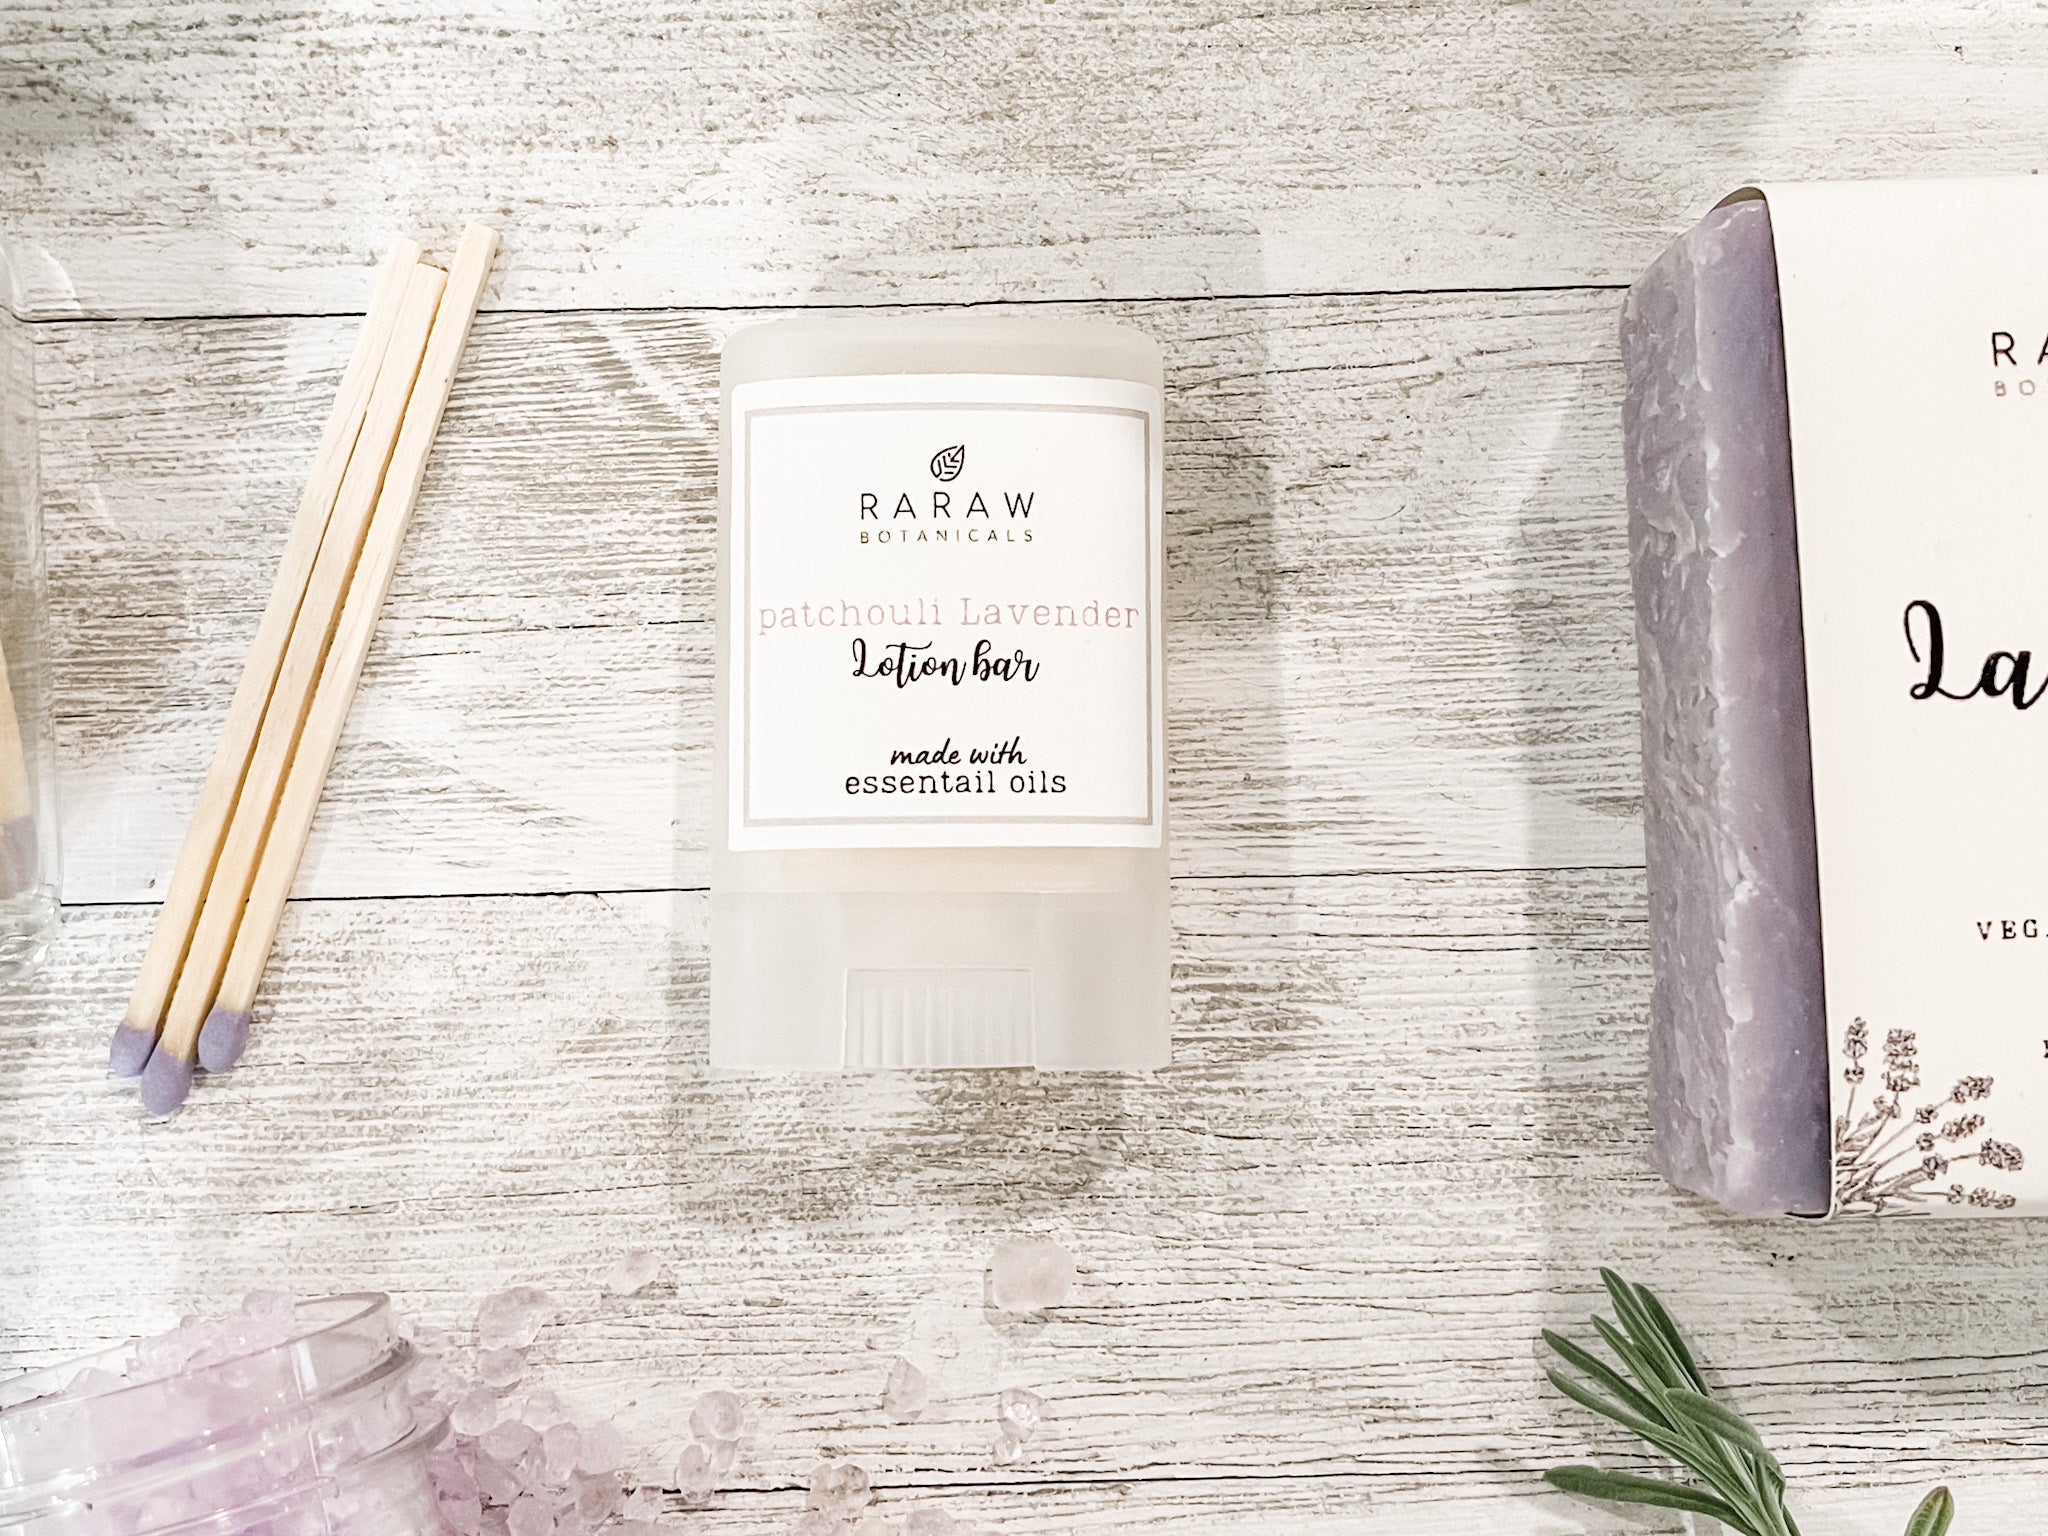 patchouli lavender lotion bar moisturizing essential oils